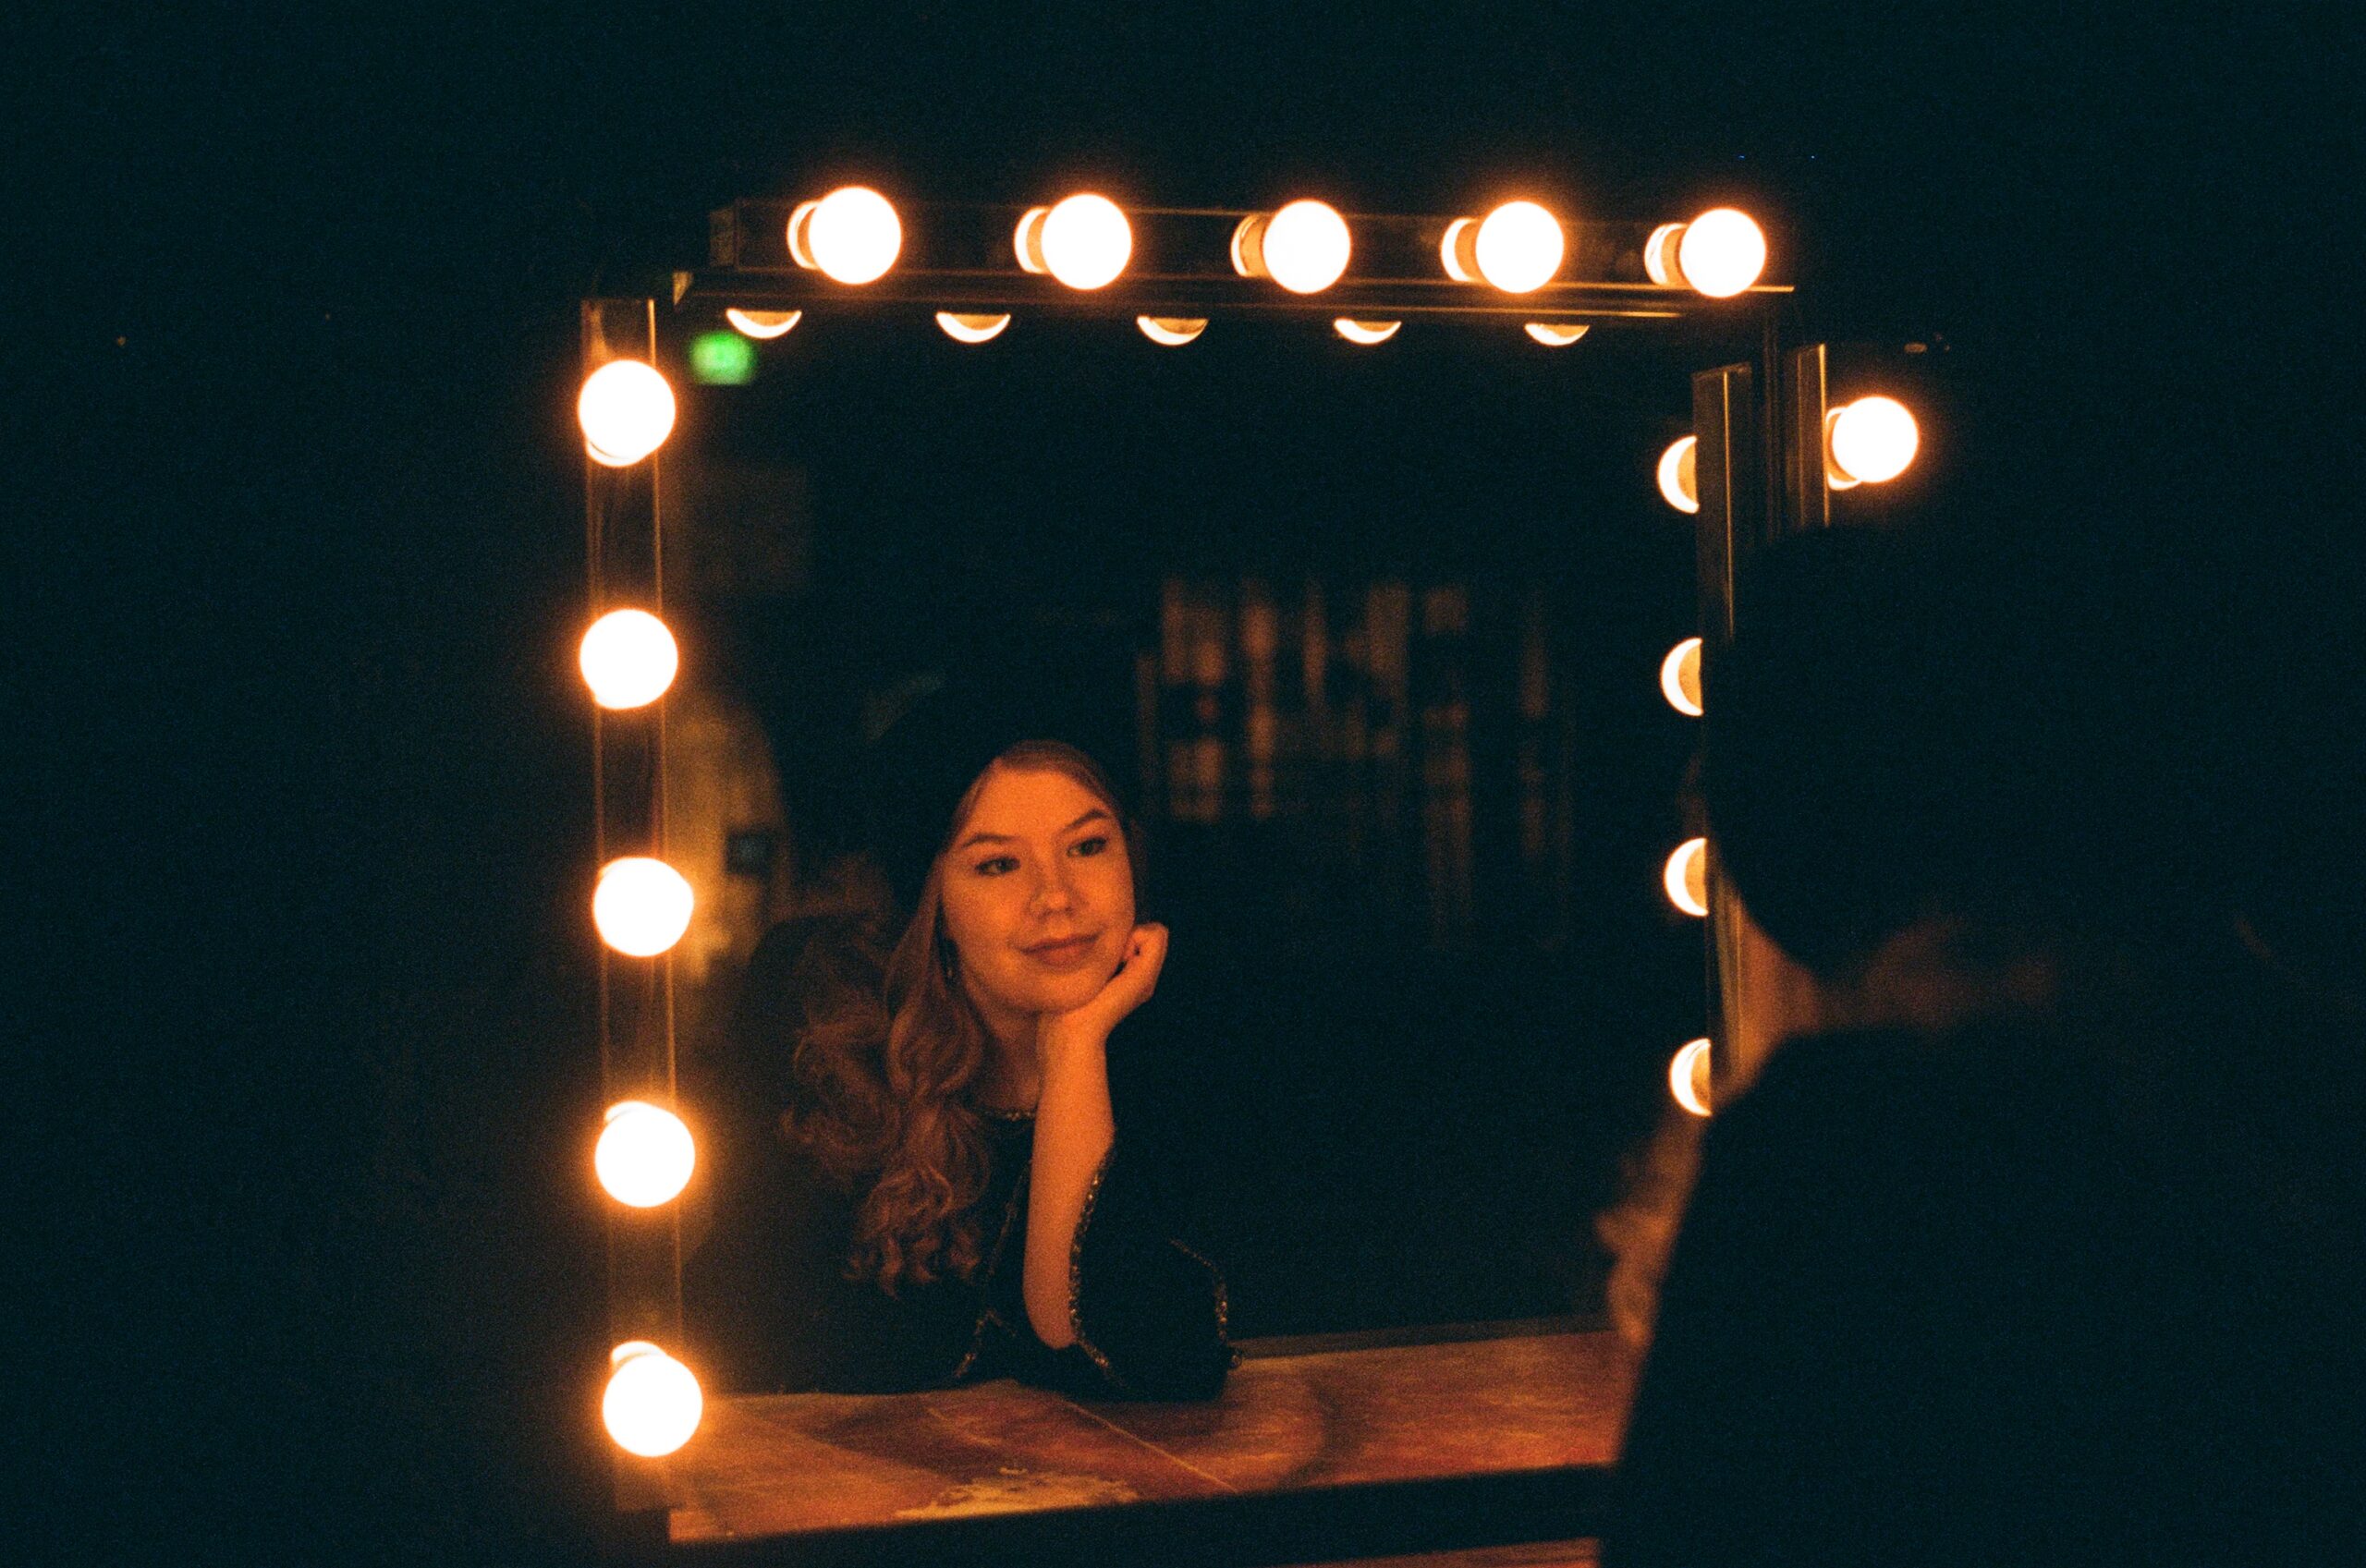 Nainen katsoo peiliin, jota ympäröivät valot. Teatterin takahuoneen meikkauspeili.